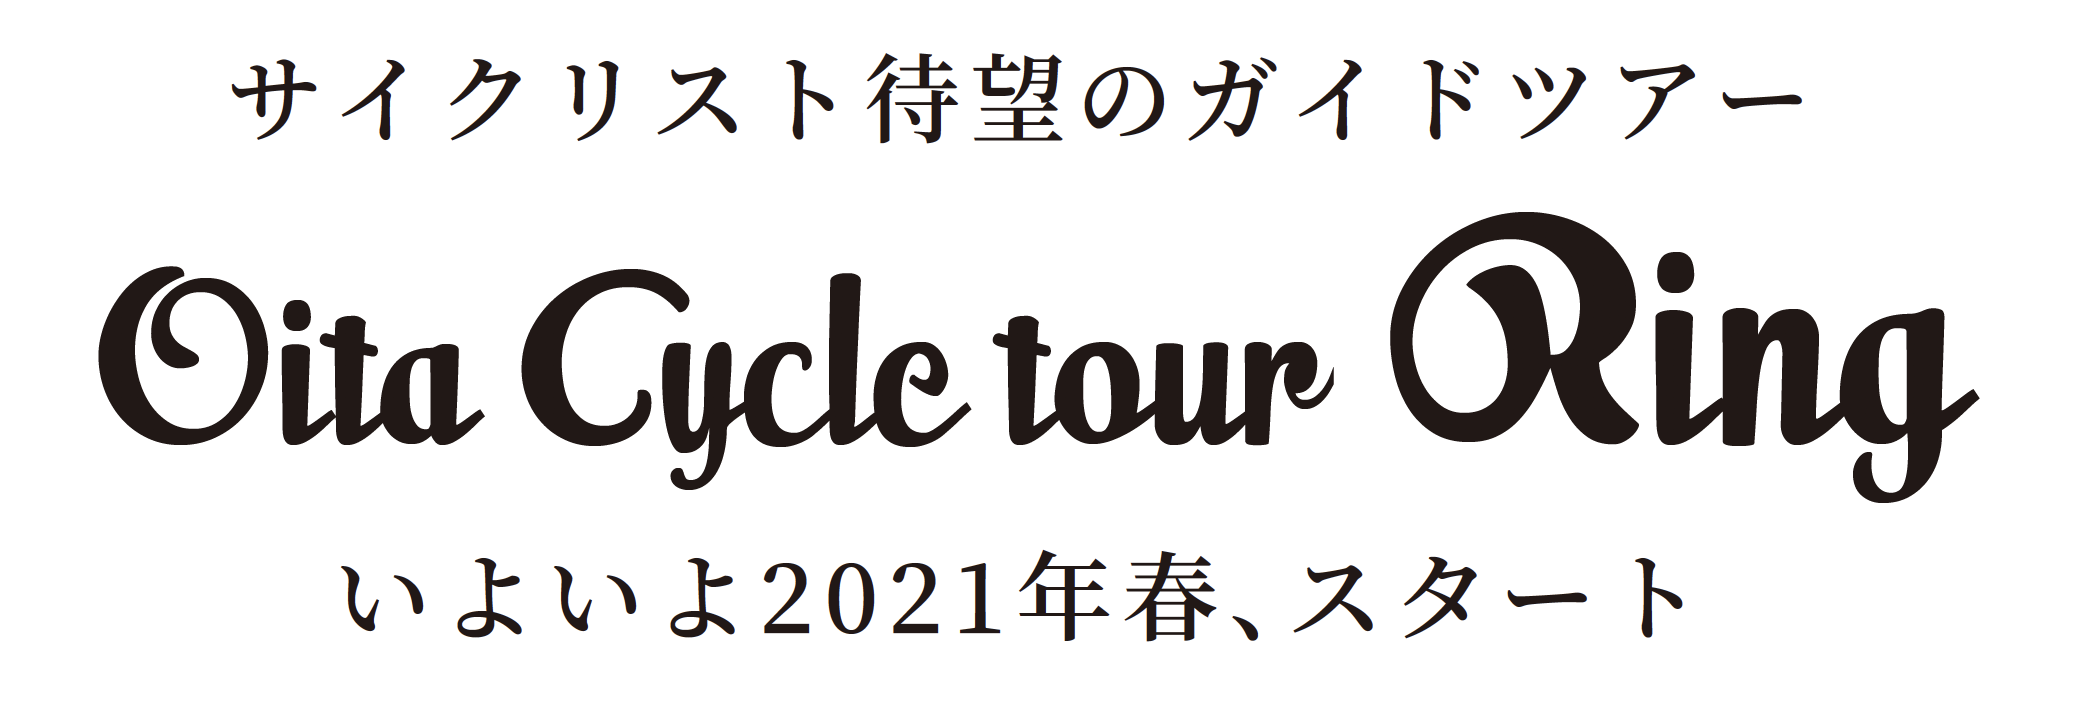 Oita Cycle tour Ring